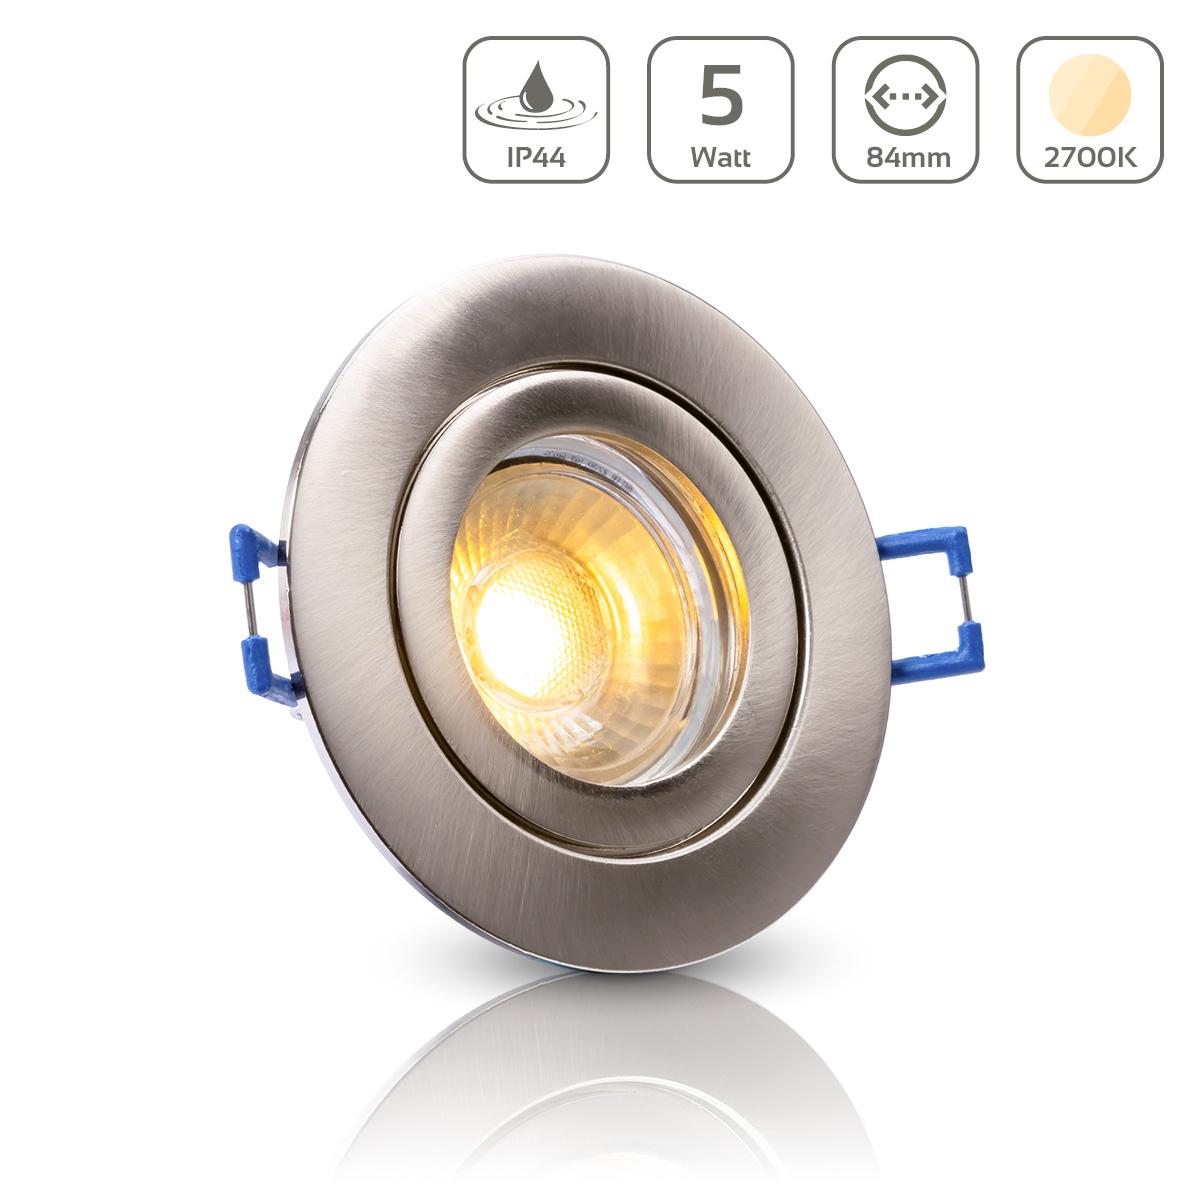 Einbauspot IP44 rund - Farbe: Edelstahl gebürstet - LED Leuchtmittel:  GU10 5W warmweiß